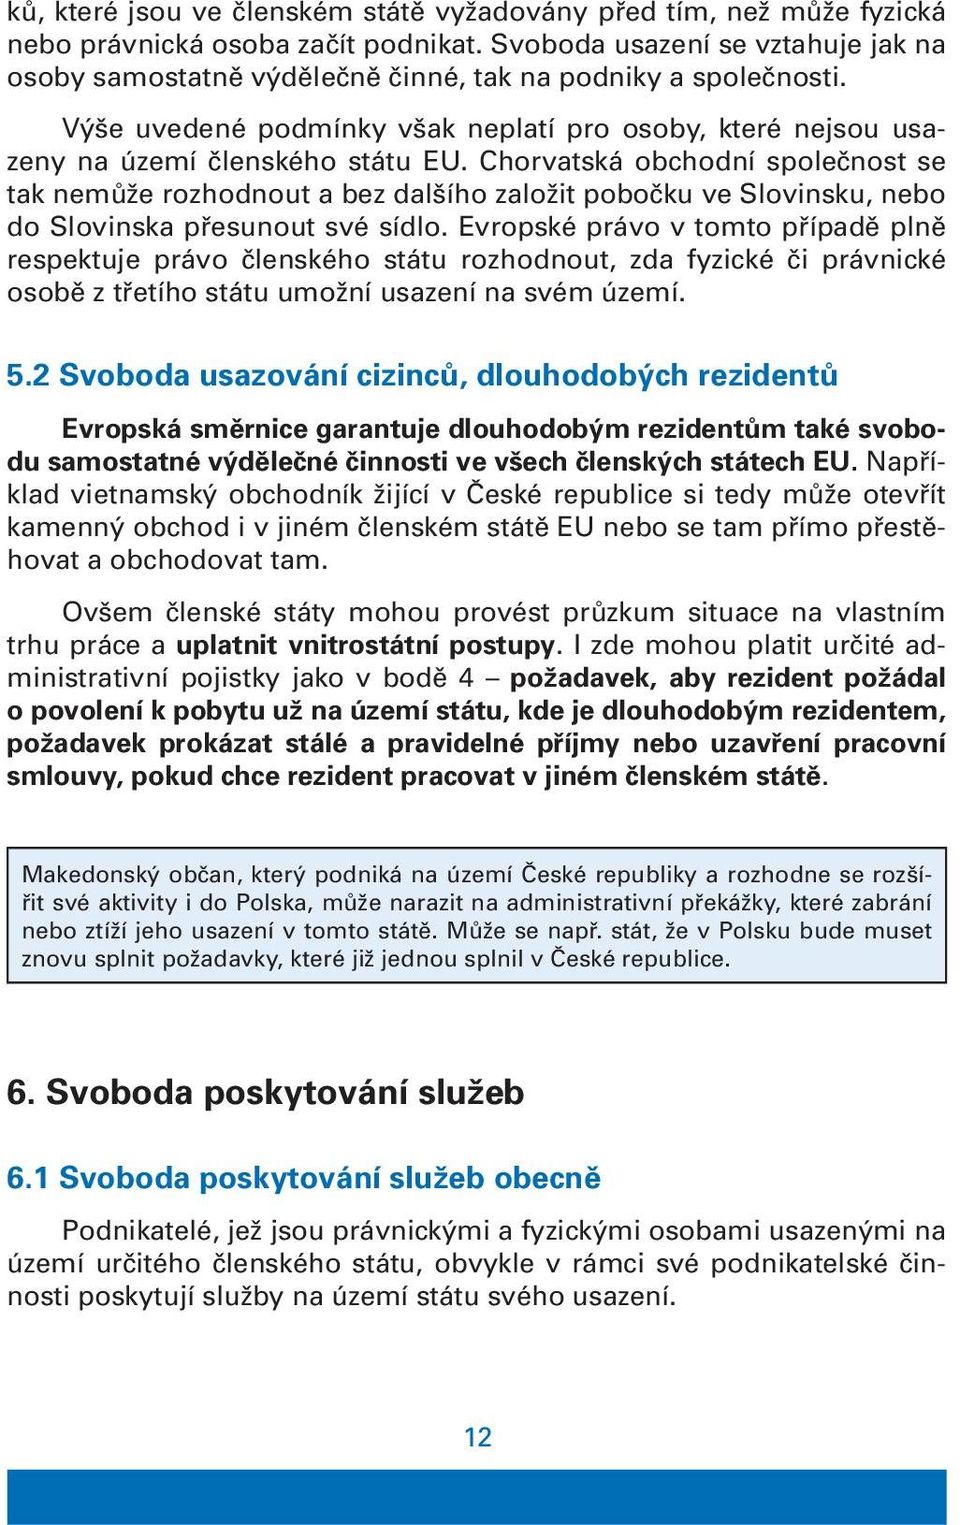 Chorvatská obchodní společnost se tak nemůže rozhodnout a bez dalšího založit pobočku ve Slovinsku, nebo do Slovinska přesunout své sídlo.